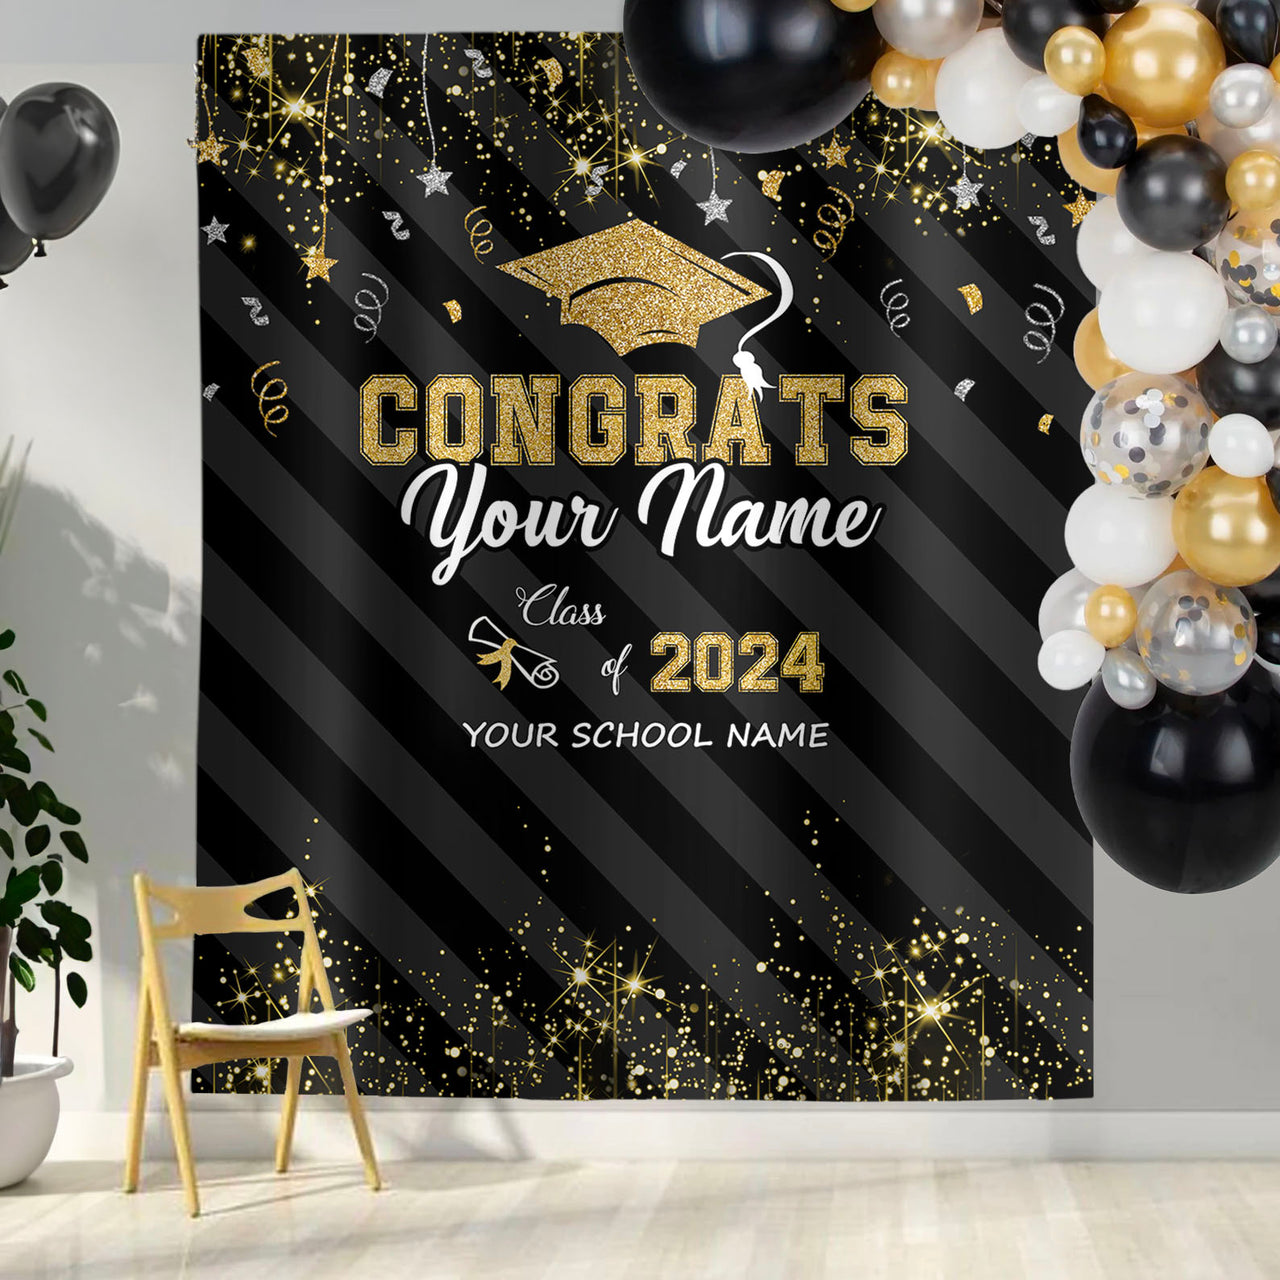 Custom Congrats Class Of 2024 Graduation Backdrop, Graduation Party Decorations